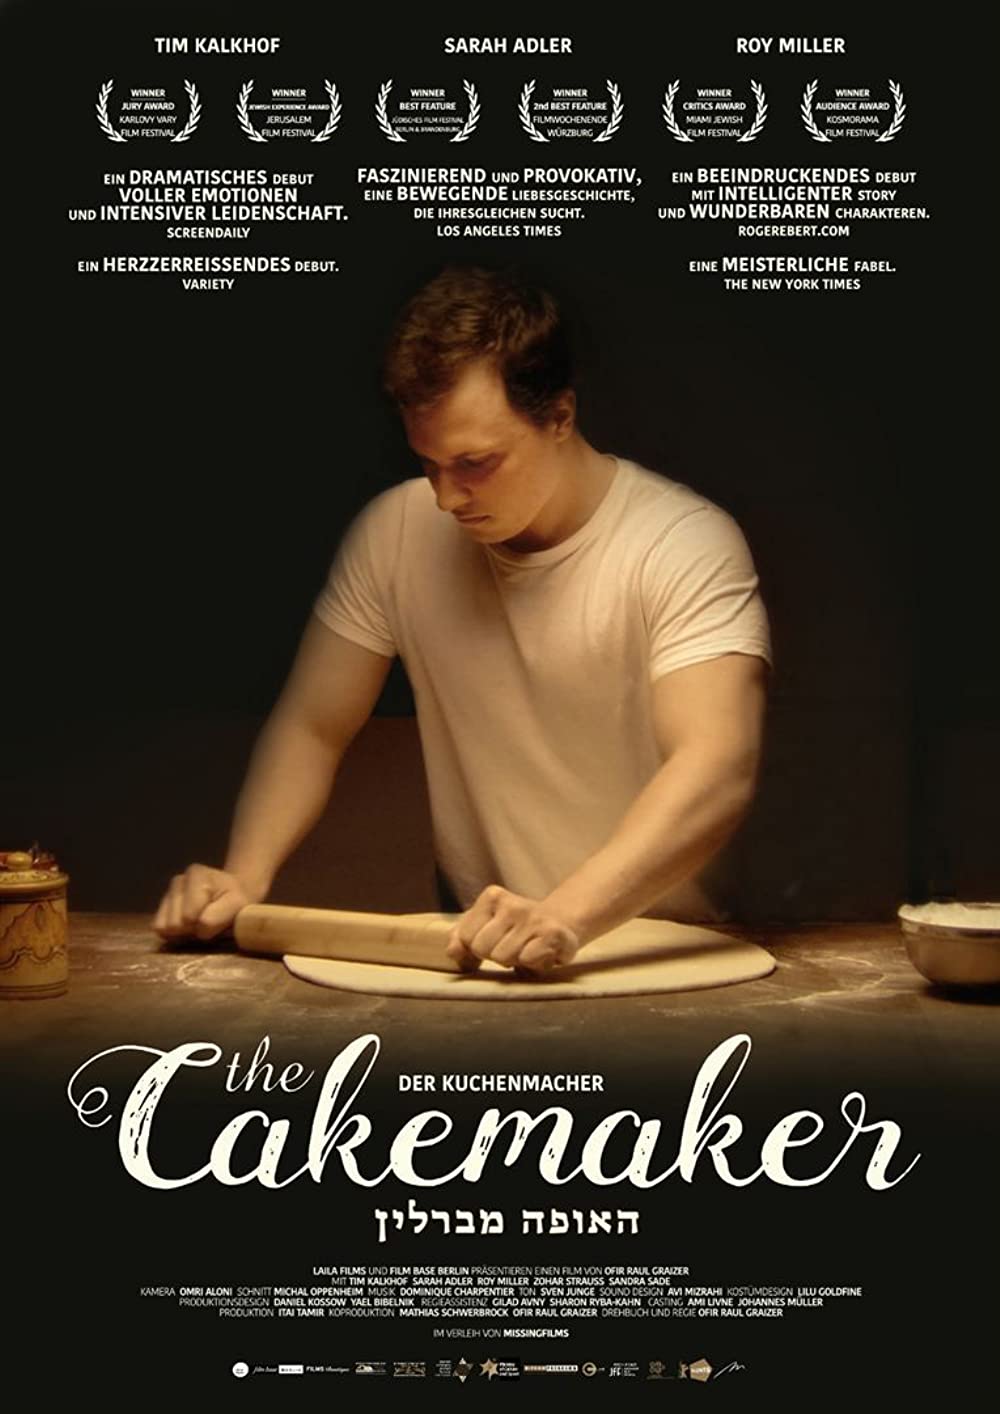 Filmbeschreibung zu The Cakemaker